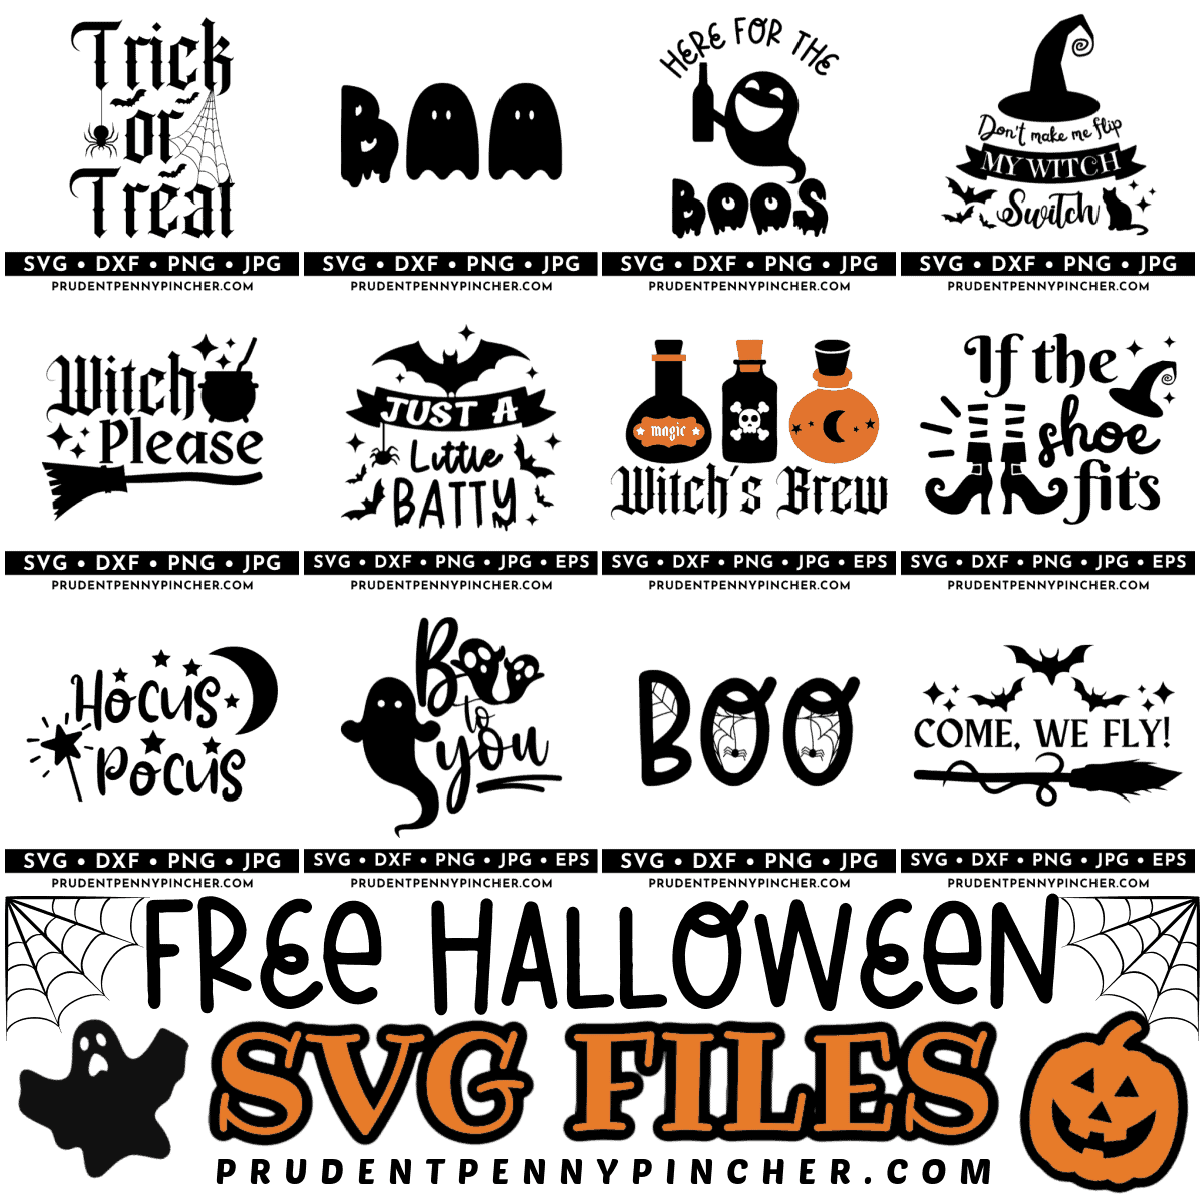 Logo SVG Free - Free SVG files